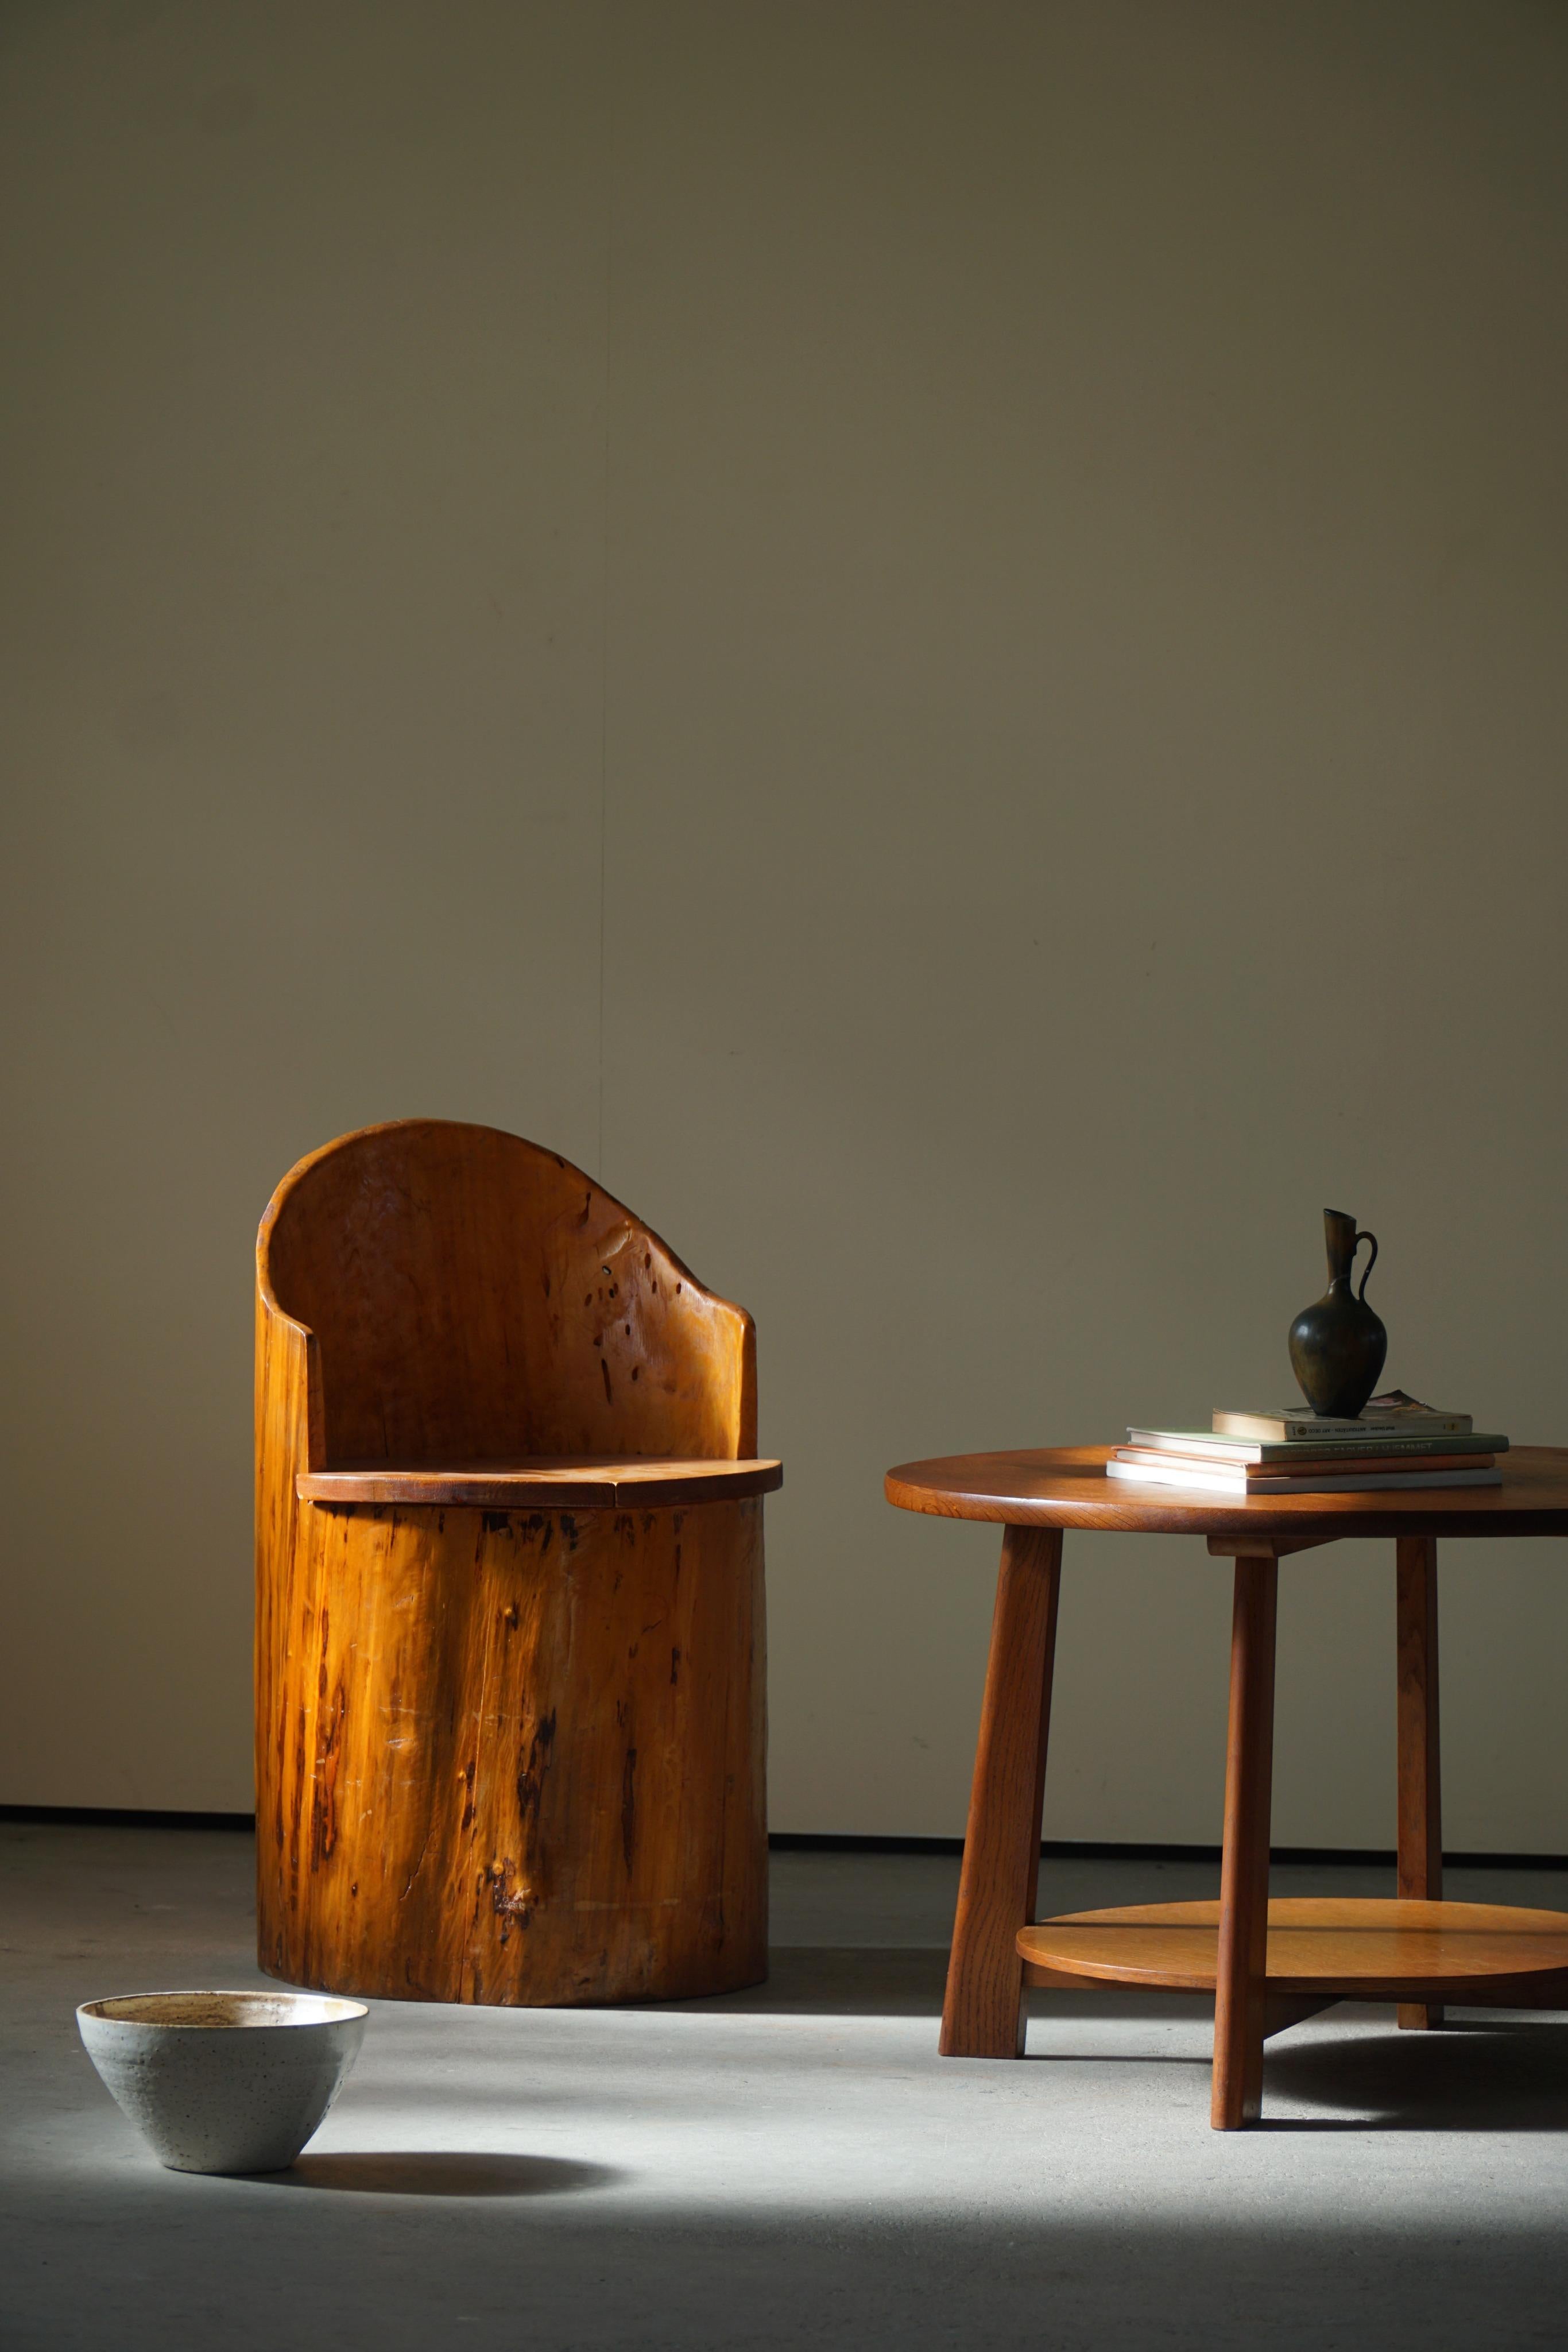 Une charmante chaise primitive en pin massif. Sculptée à la main par un ébéniste suédois inconnu dans les années 1960. Une belle pièce wabi sabi pour un intérieur moderne.

Cette chaise attrayante s'adaptera à de nombreux types de décors.